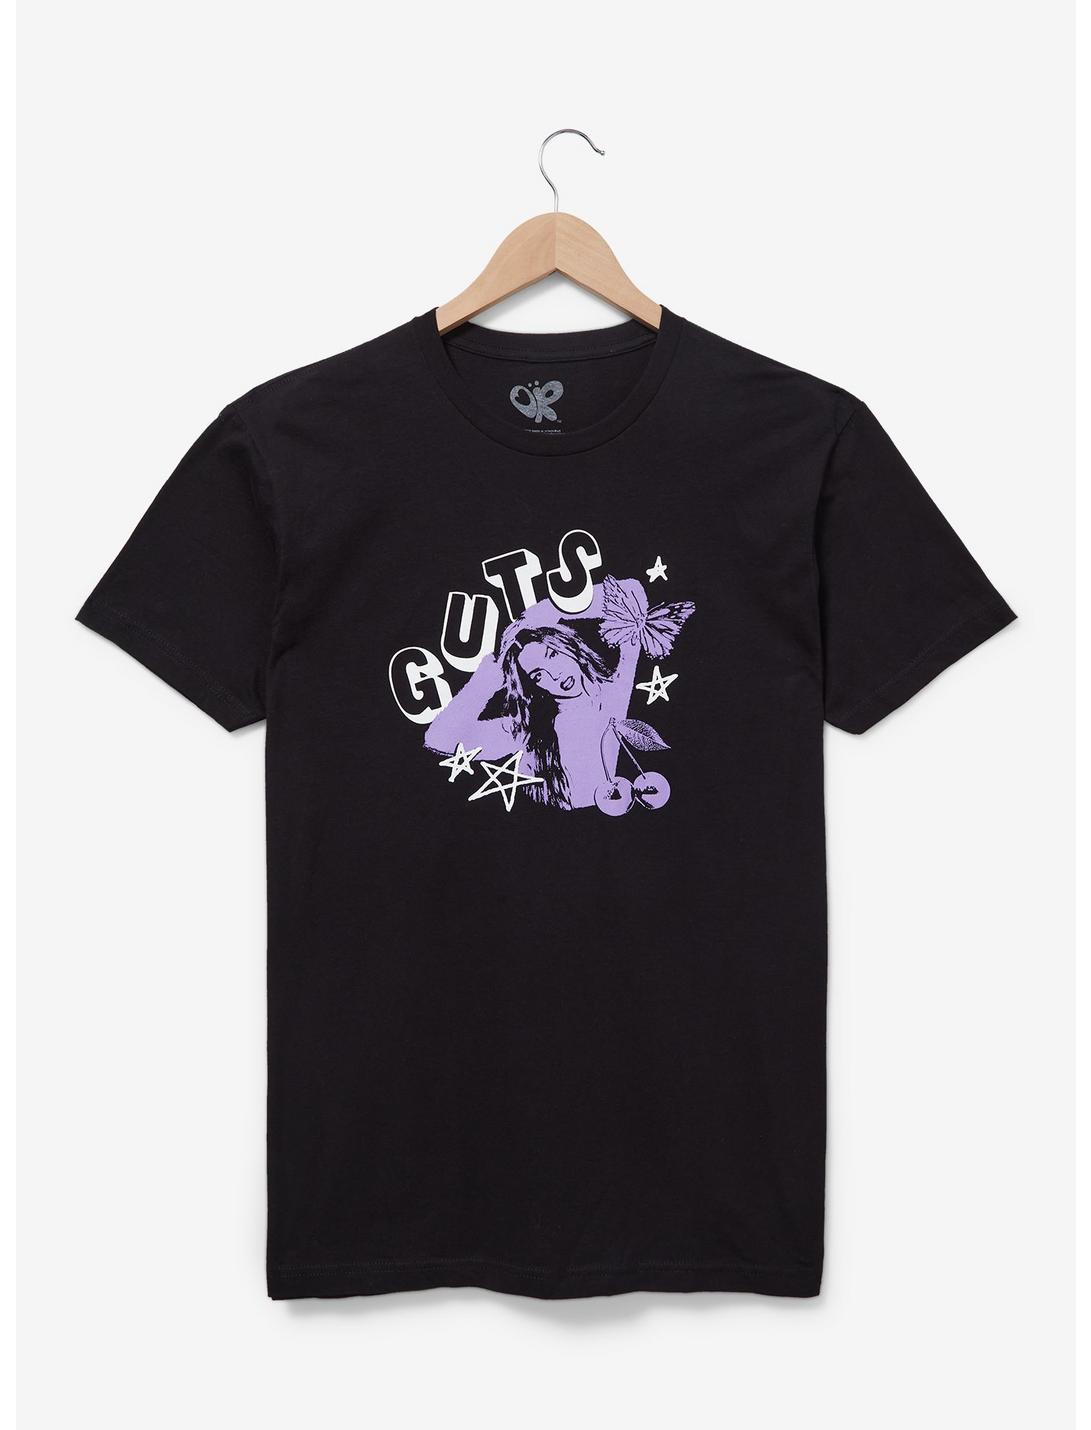 Olivia Rodrigo Guts Graphic T-Shirt — BoxLunch Exclusive, BLACK, hi-res